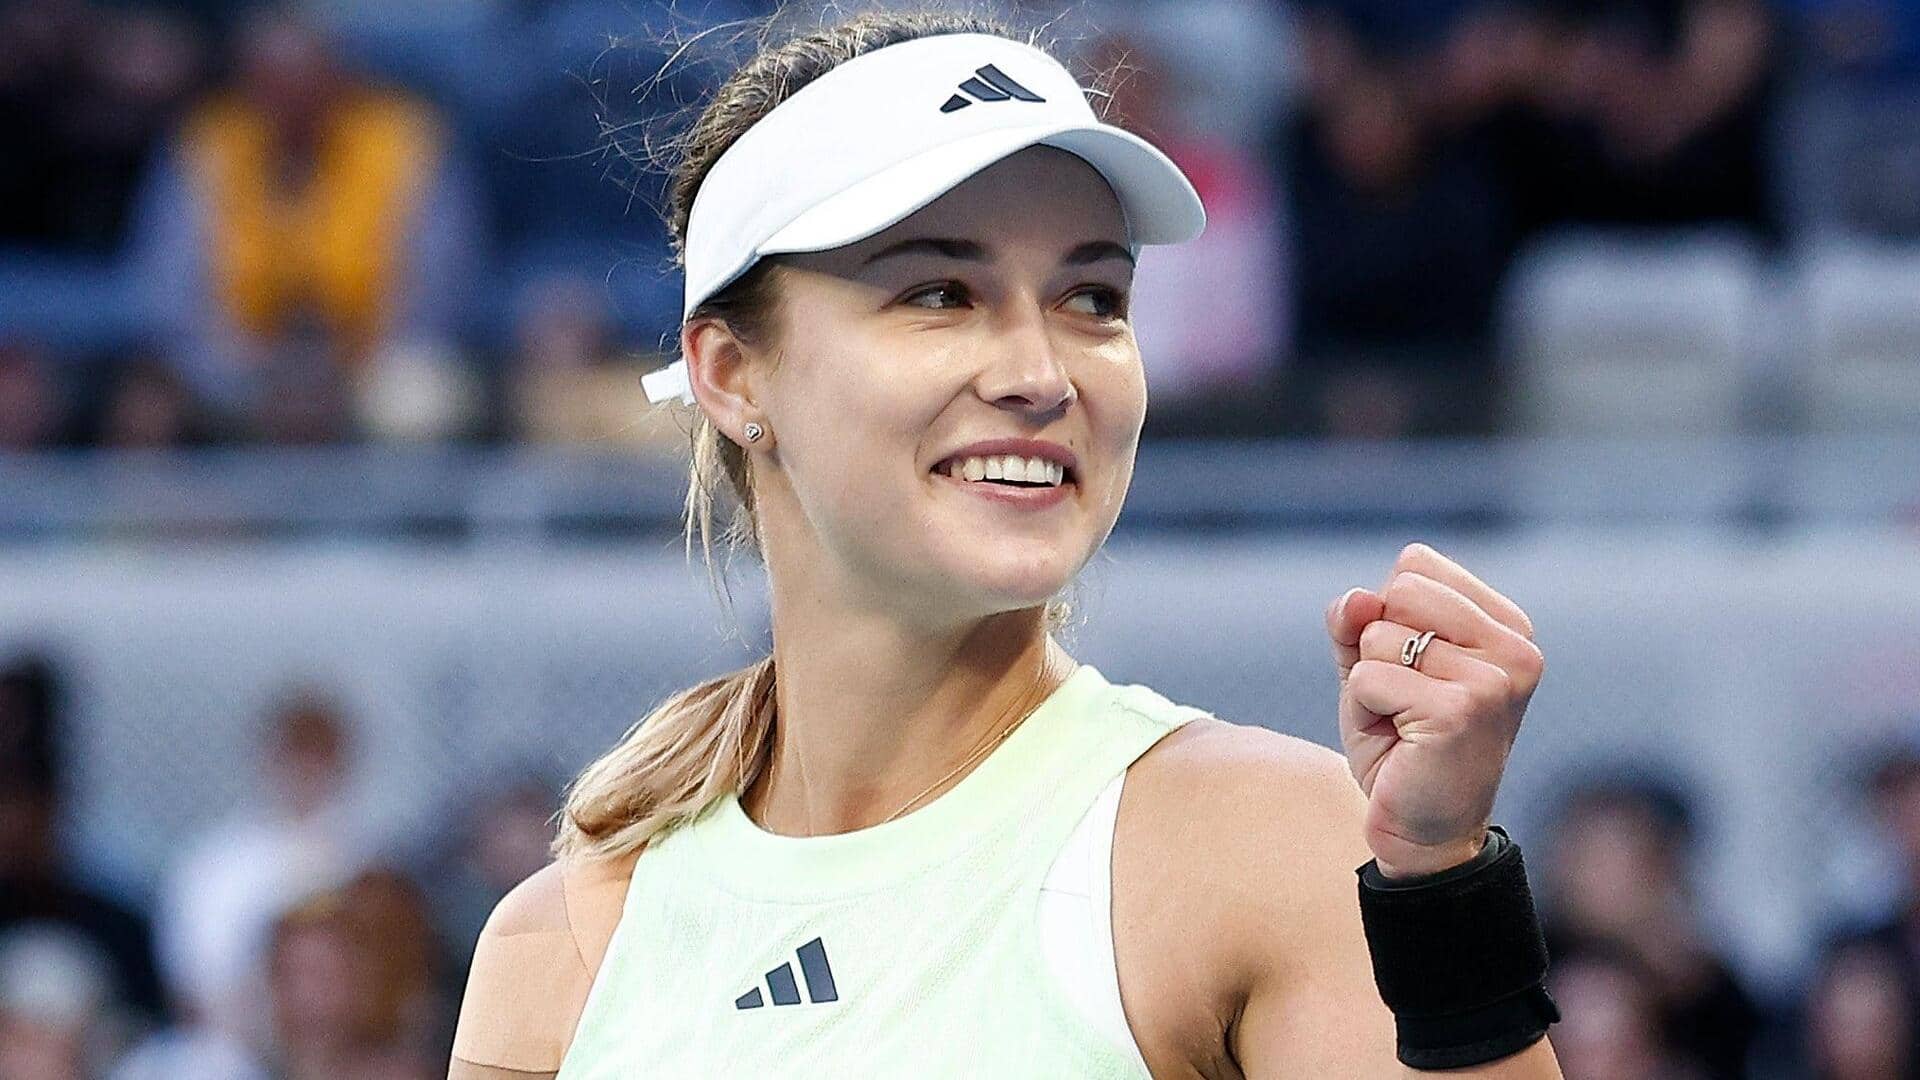 Australian Open: Anna Kalinskaya reaches her first Grand Slam quarter-final